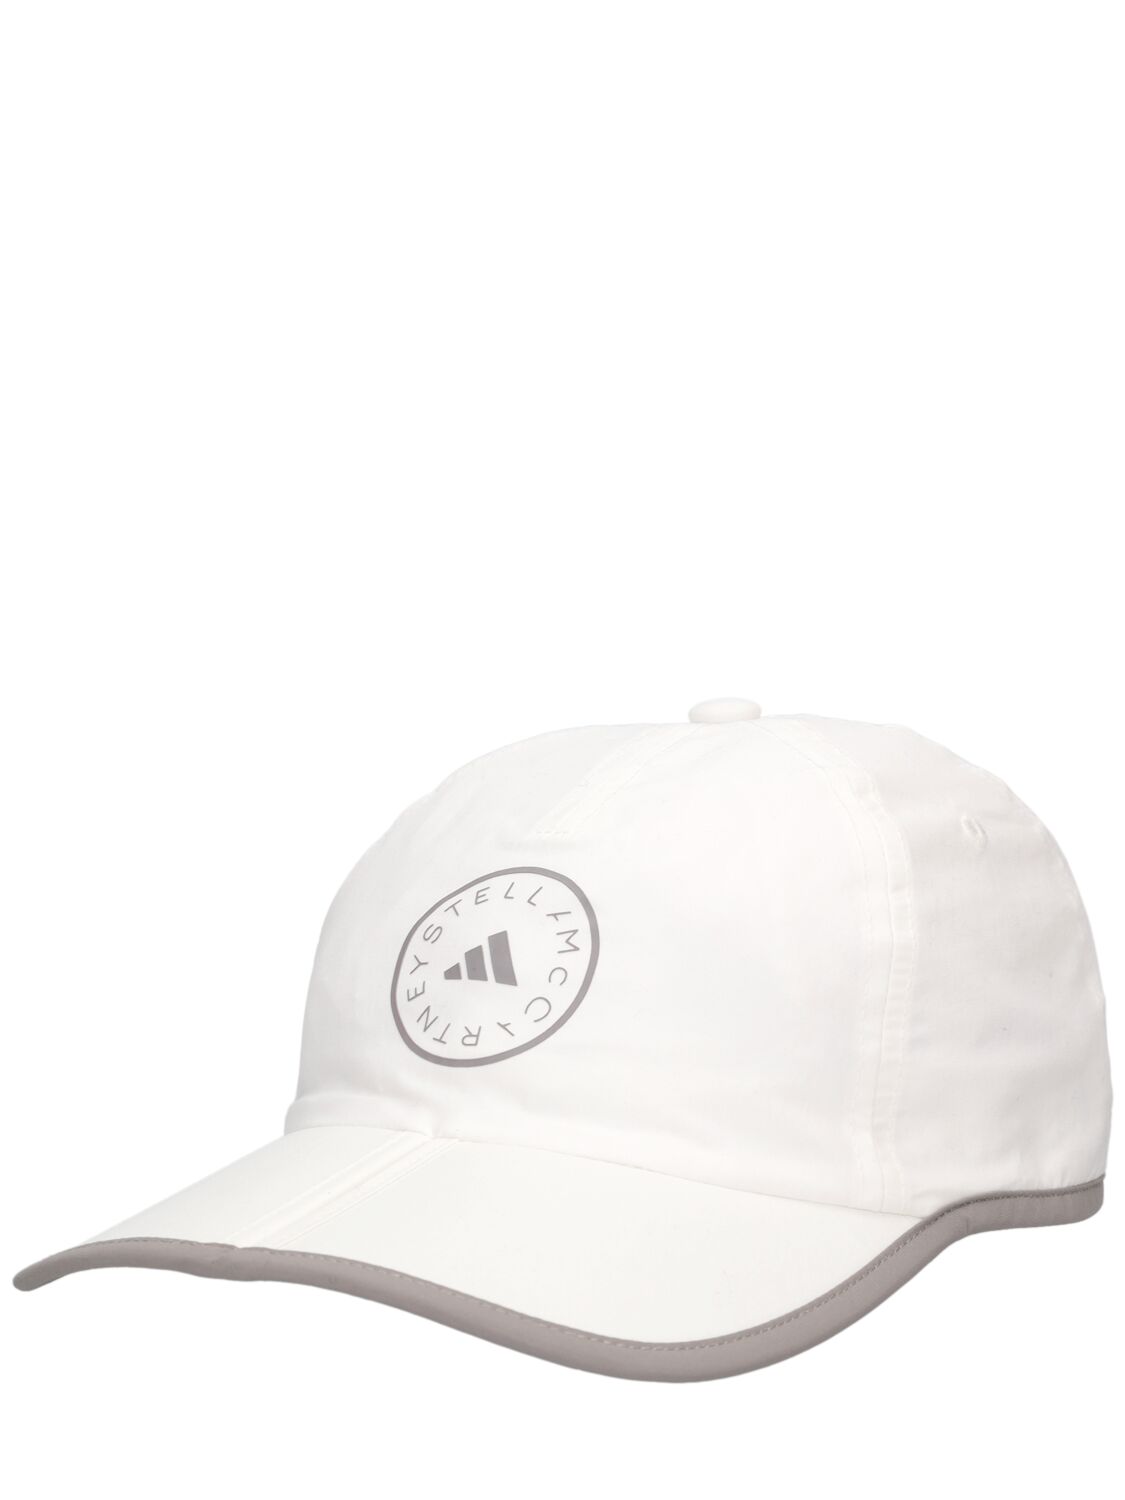 Shop Adidas By Stella Mccartney Asmc Baseball Cap W/ Logo In White